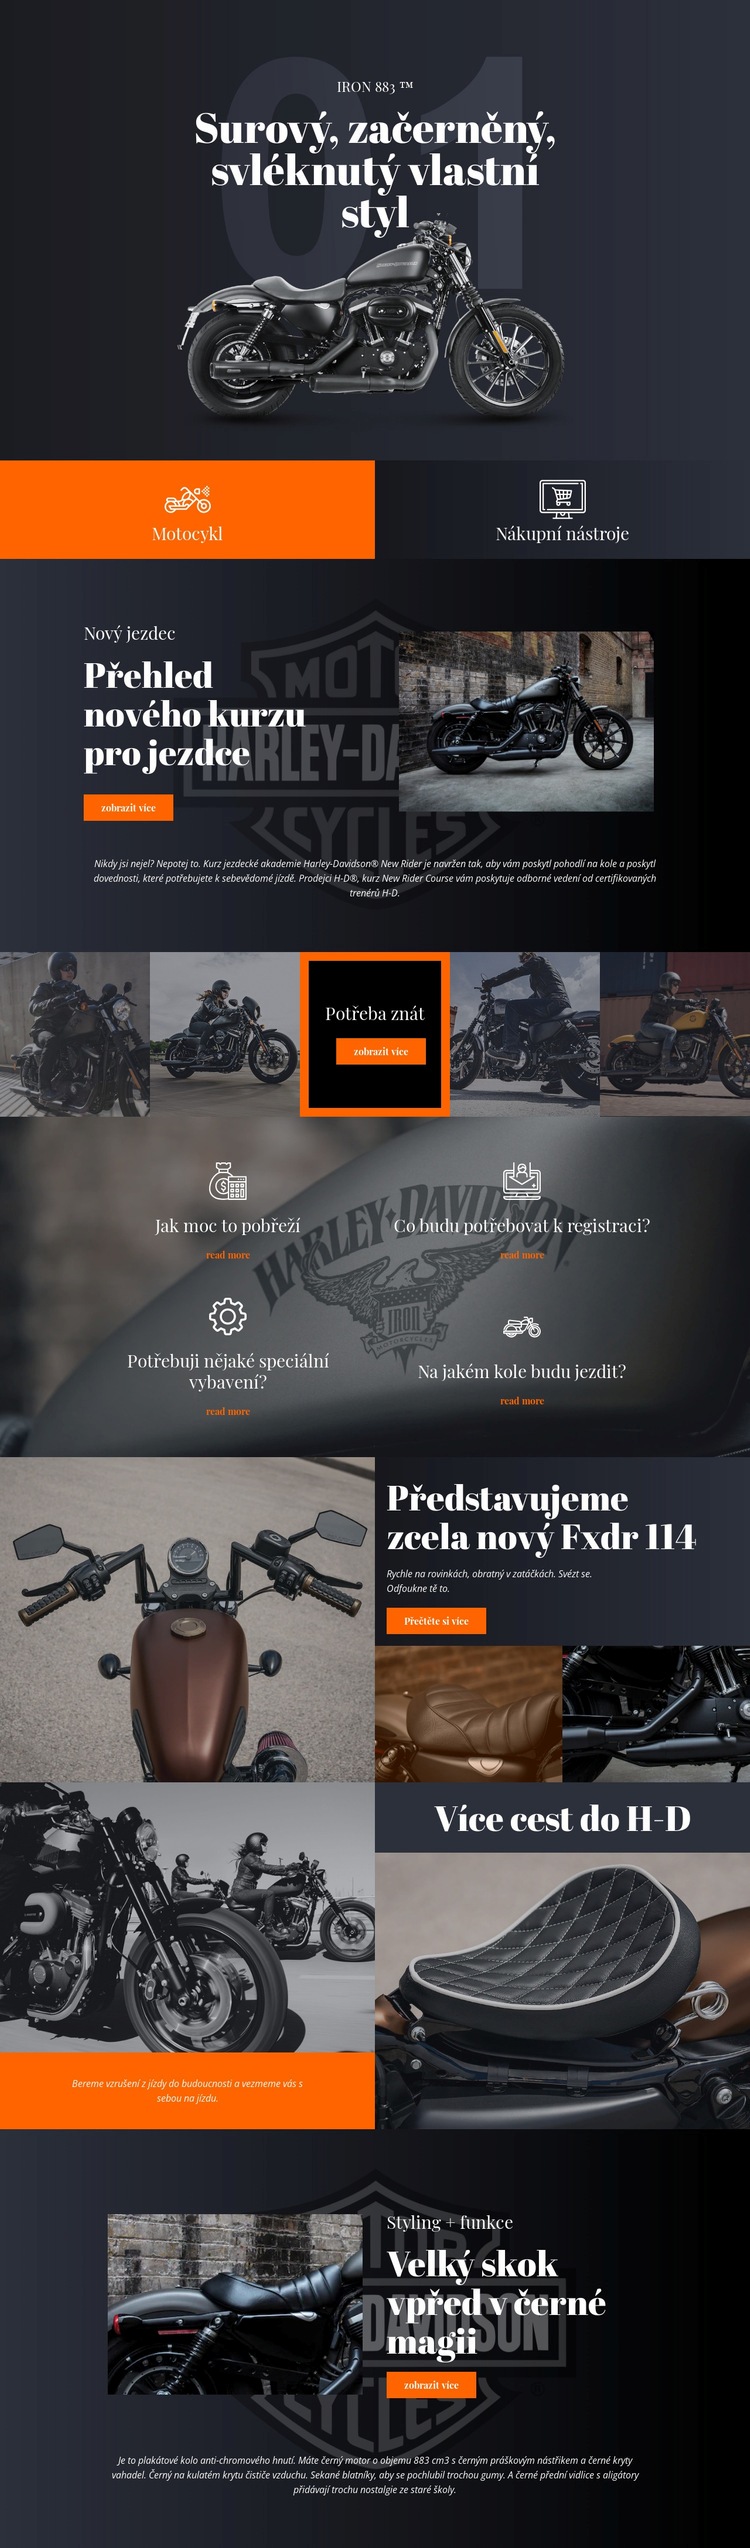 Harley Davidson Webový design